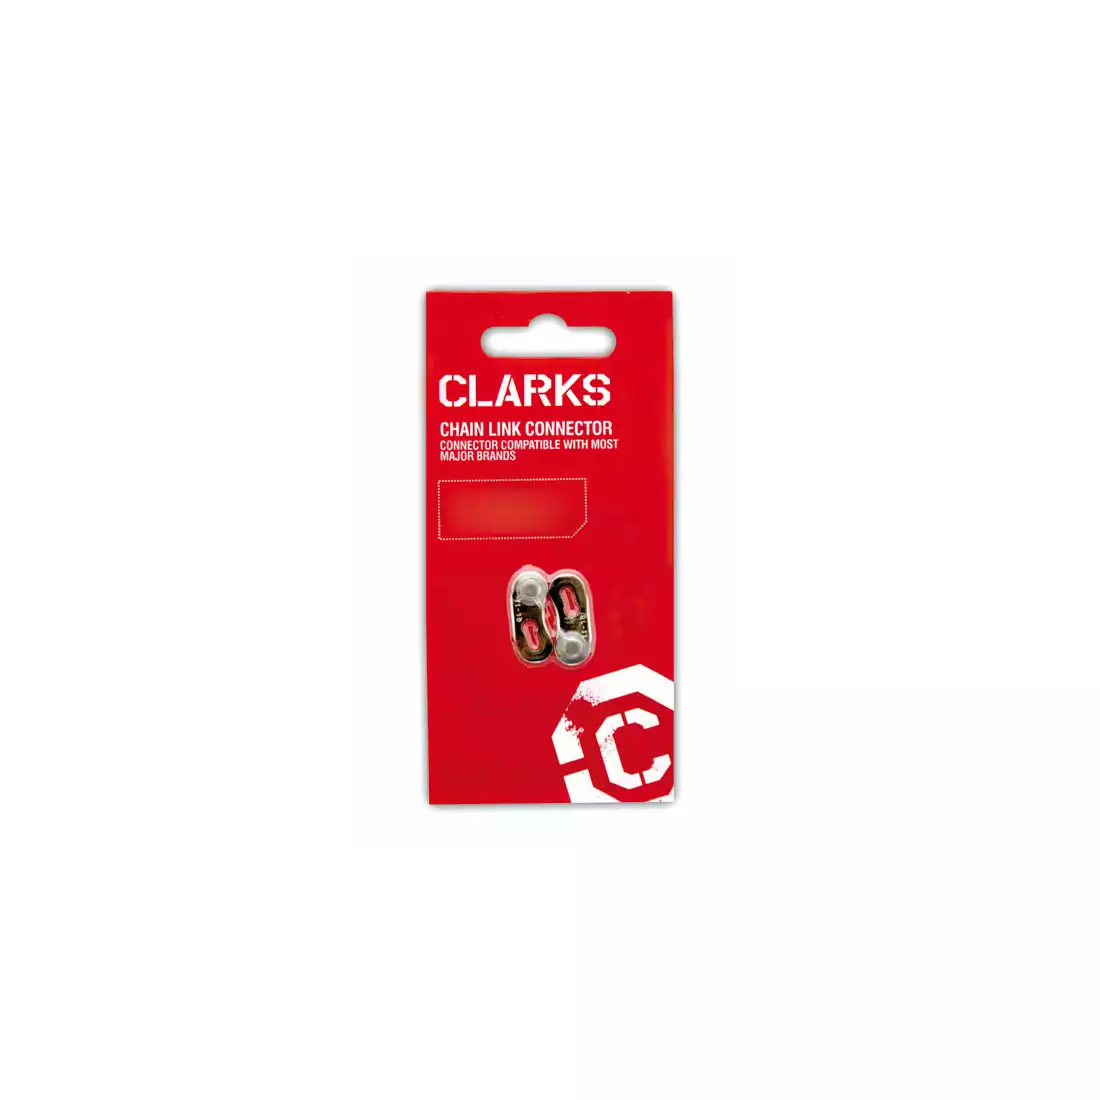 CLARKS CL5-8 Clip pentru lanț de bicicletă, 5-8 rânduri, argintiu